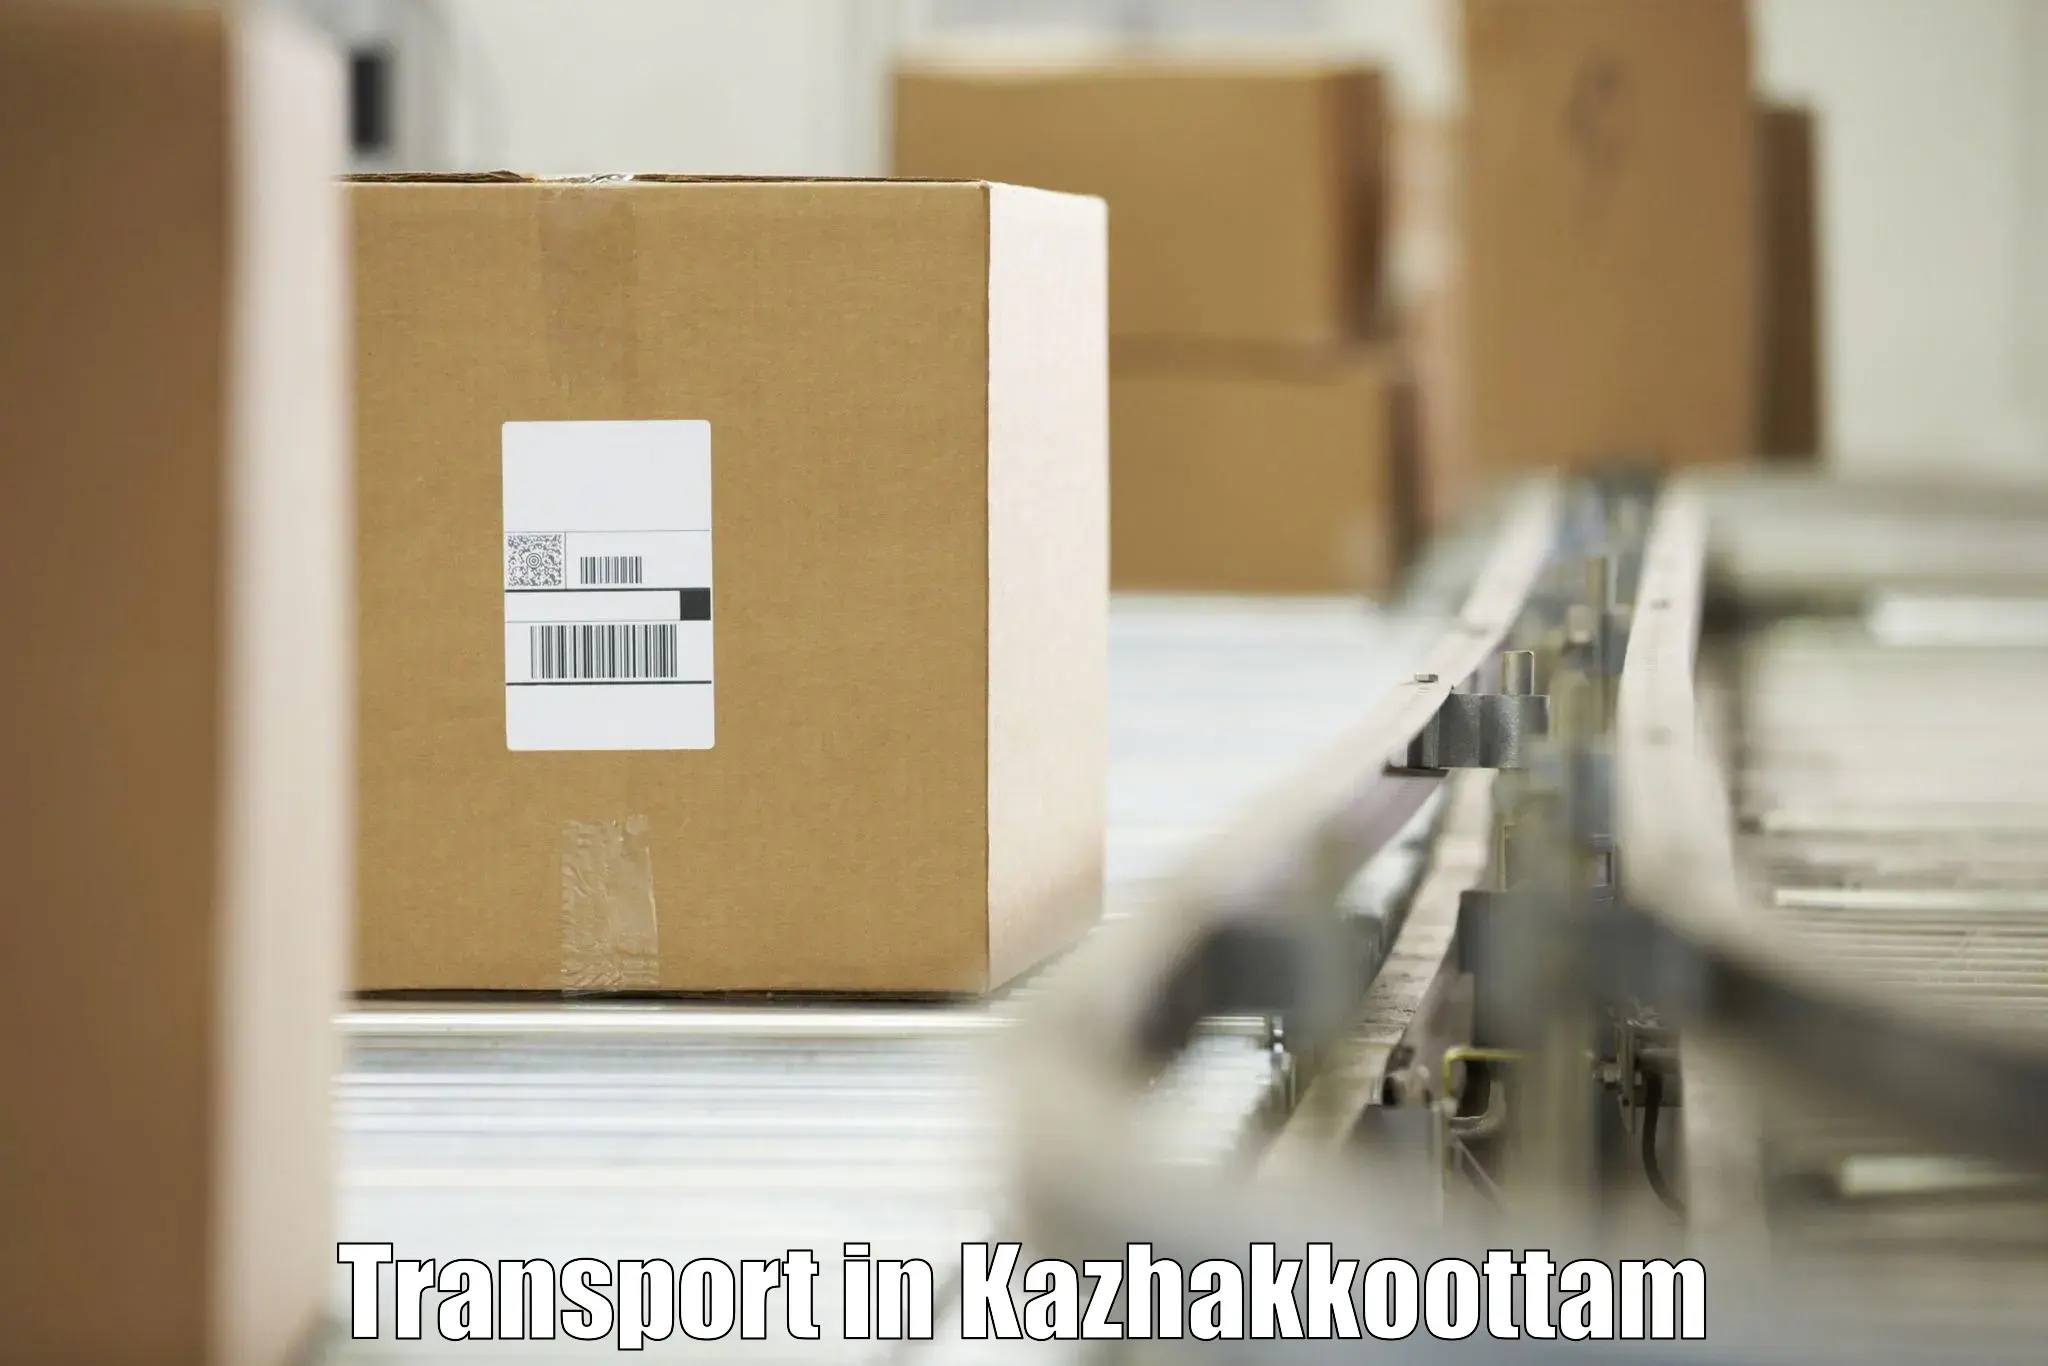 Interstate goods transport in Kazhakkoottam